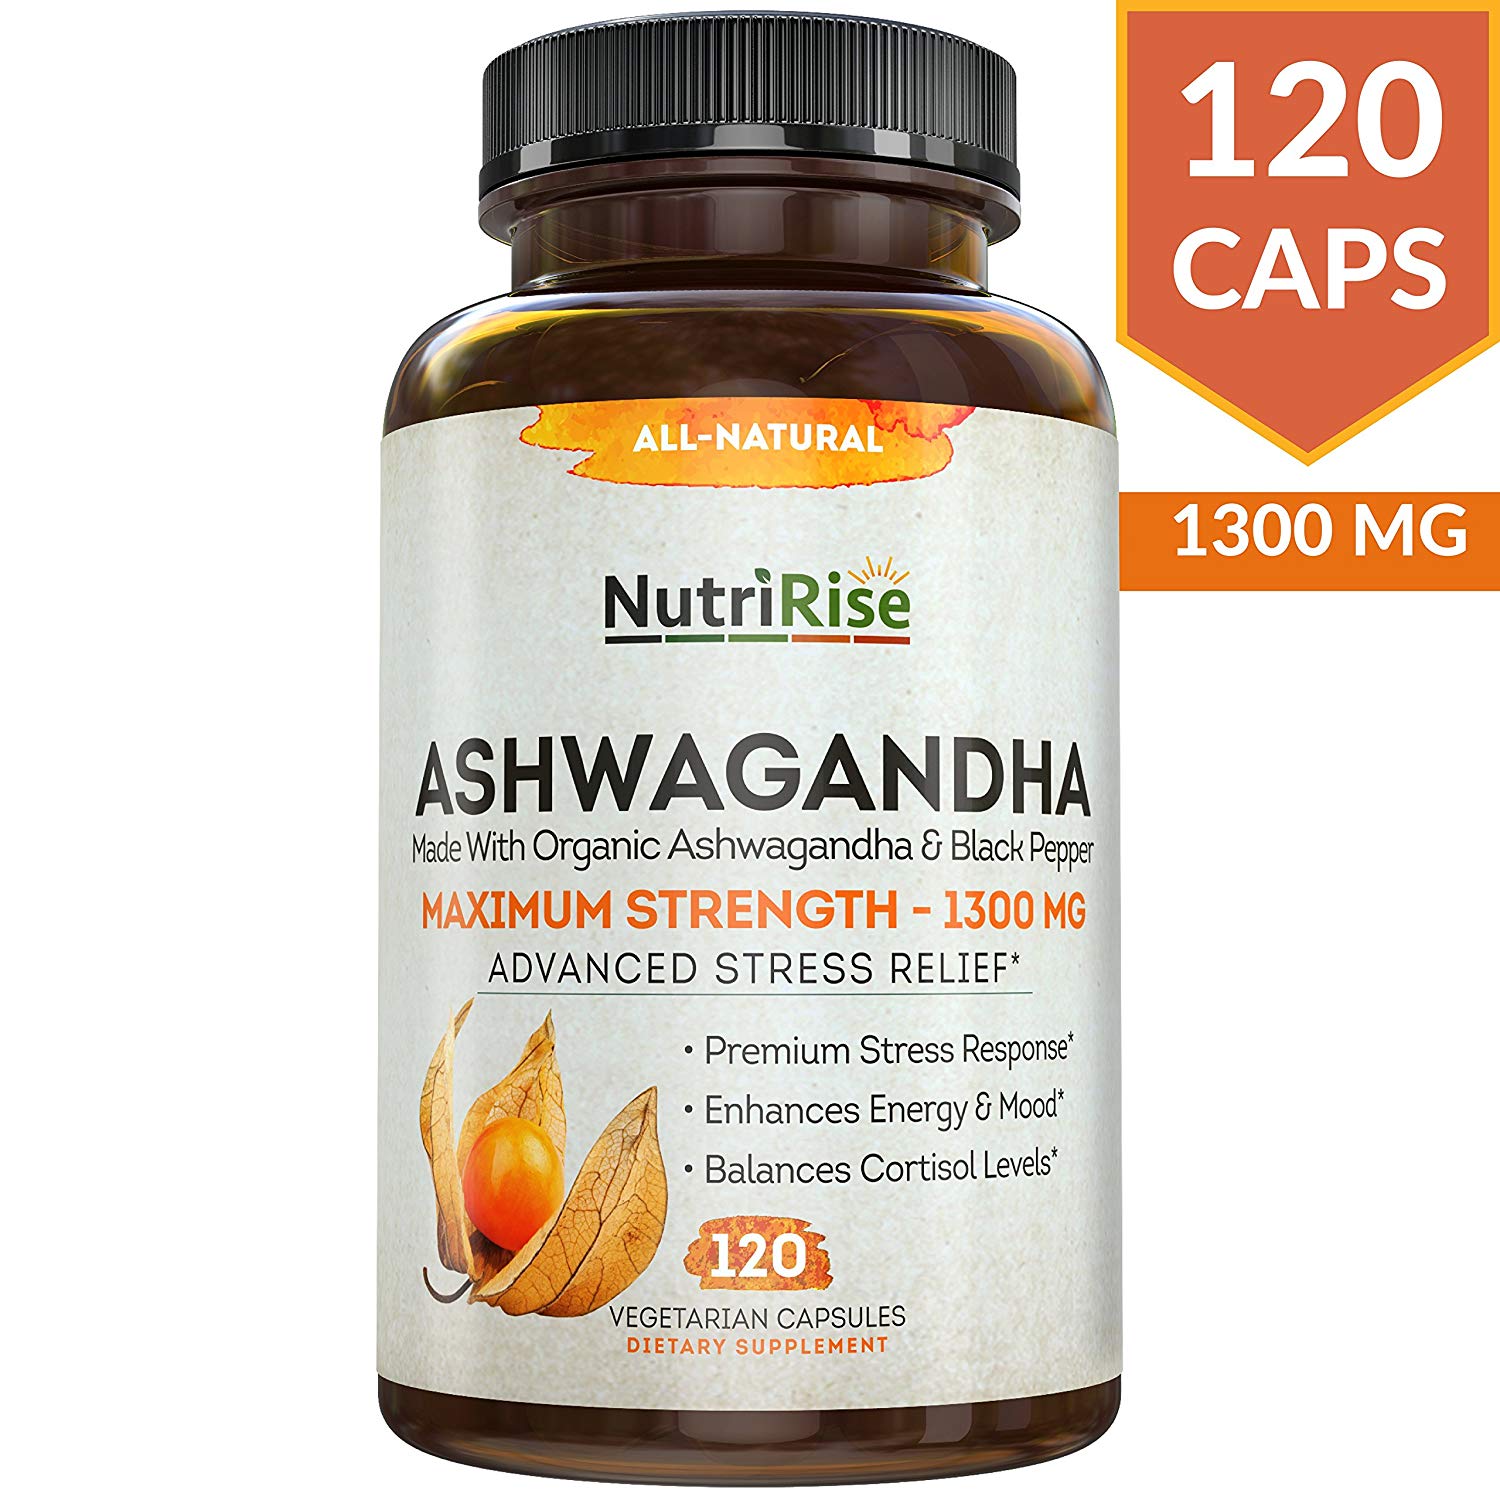 which ashwagandha powder is best